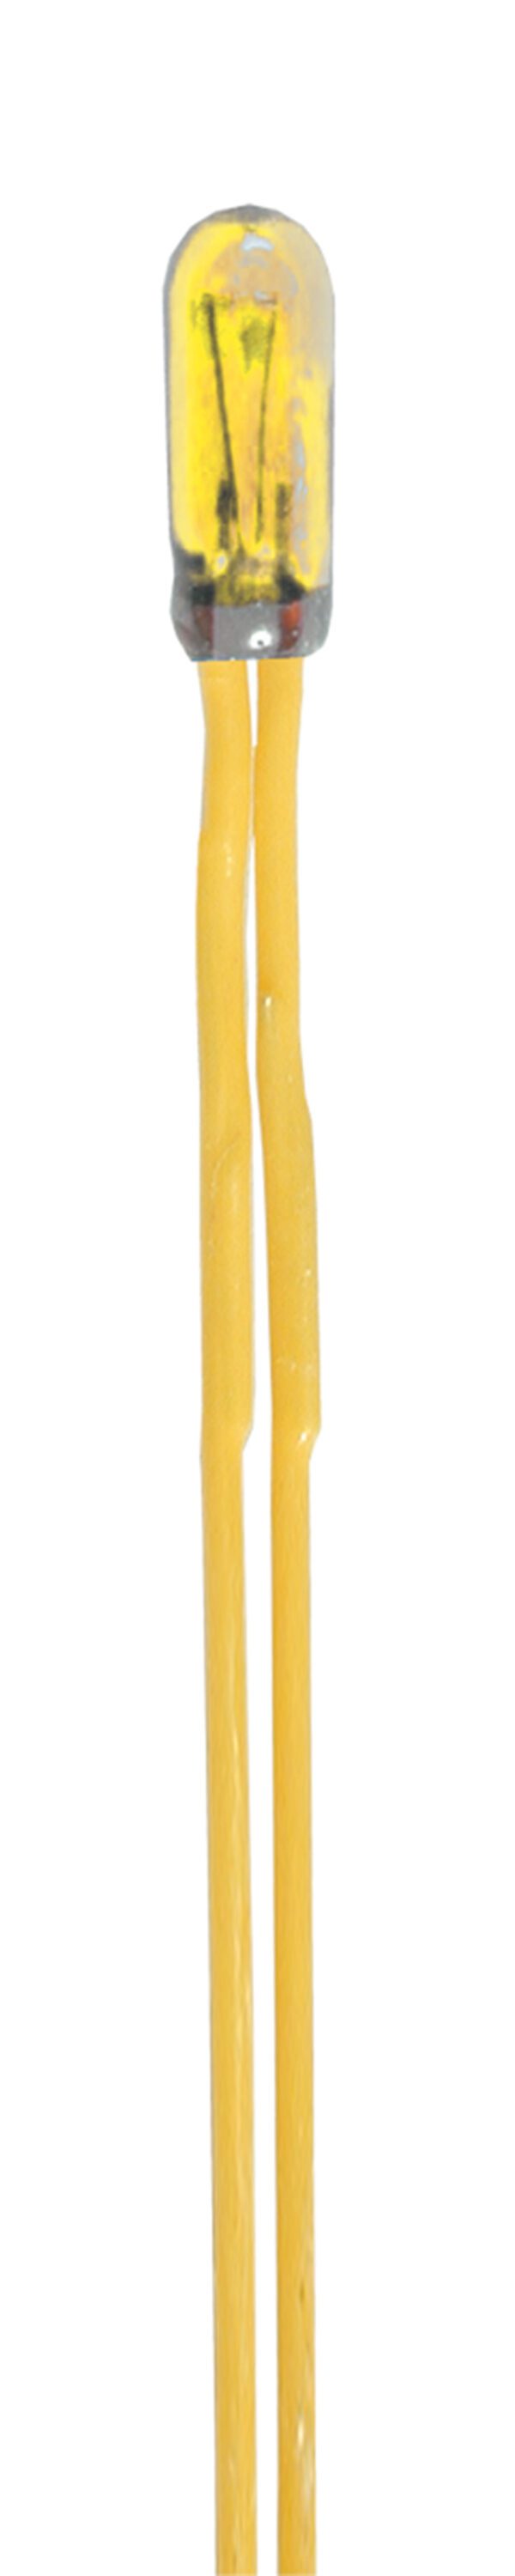 Viessmann 3501 <br>Gluehlampen gelb 2,3 mm, 2 St | 3501 1 scaled